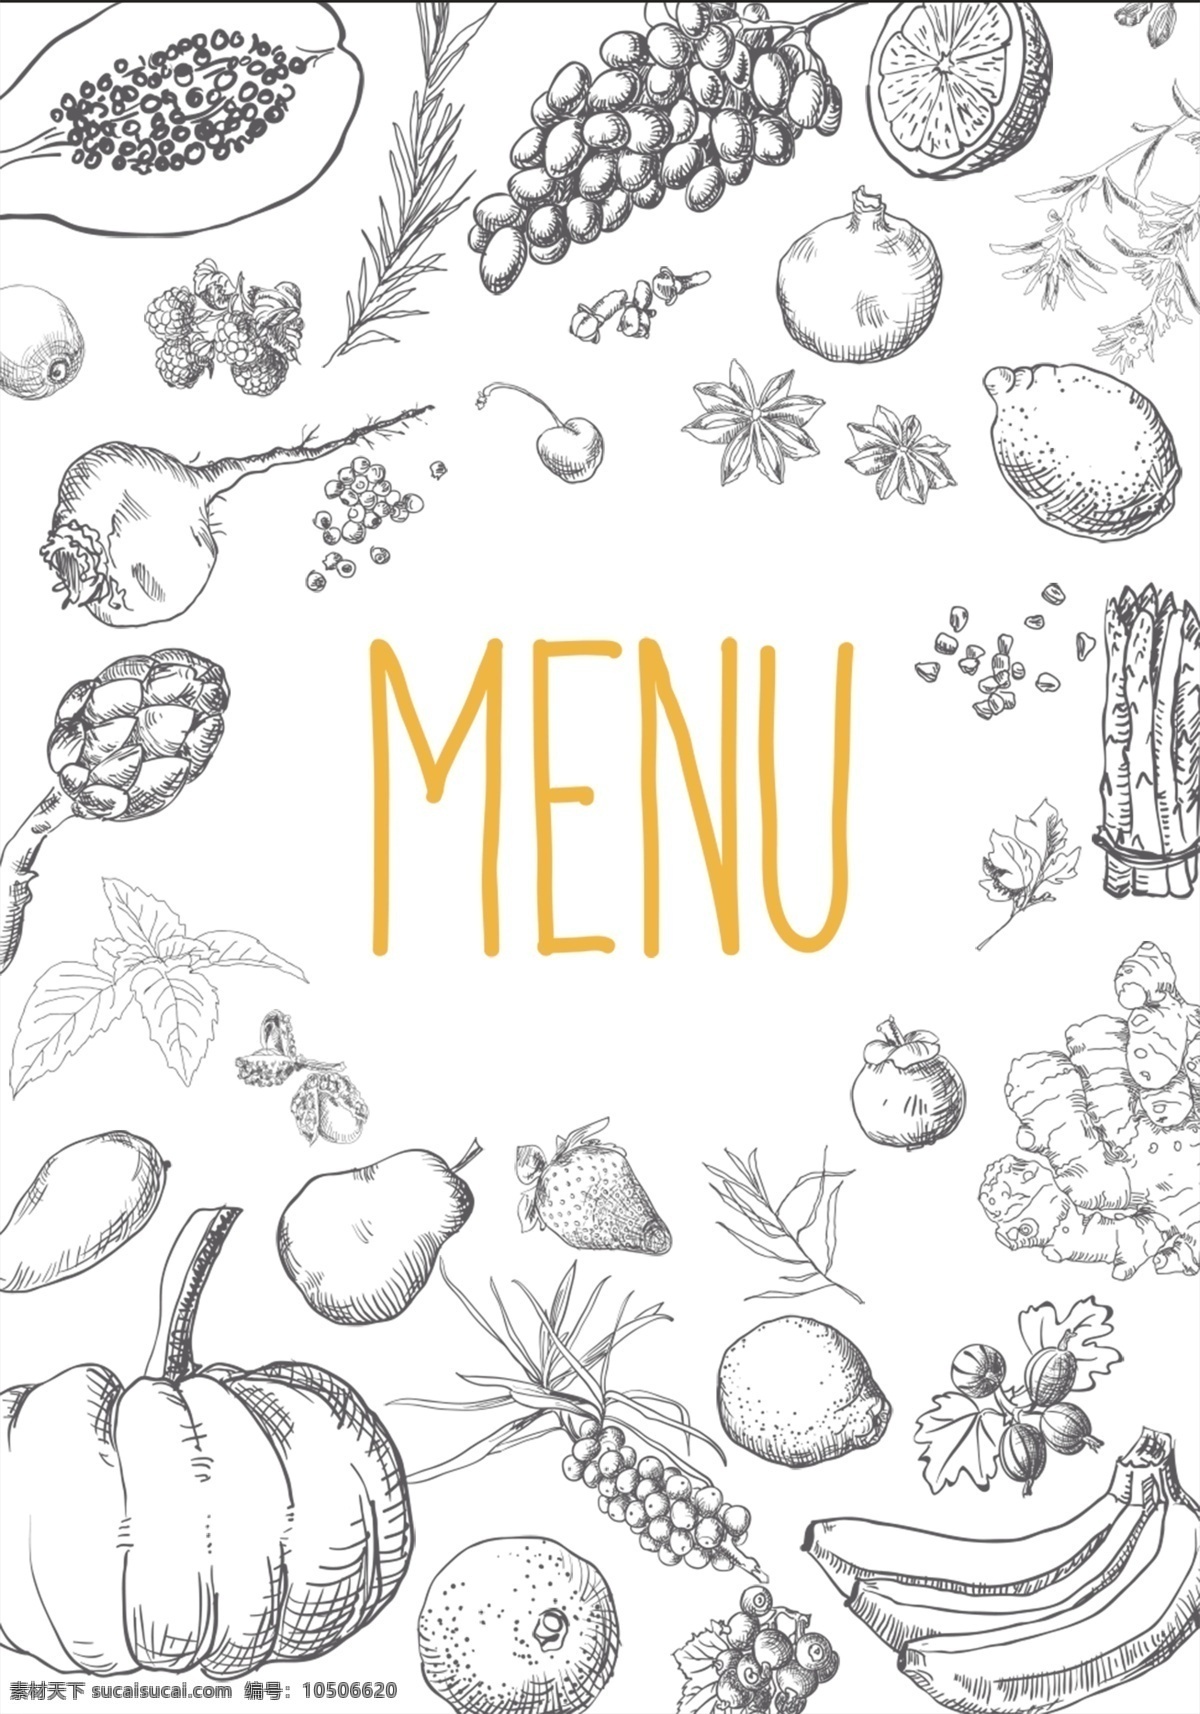 美式 西餐 手绘 线 稿 披萨 果蔬 食 背景 食品 黑板 美食 餐饮 面包 线稿 餐馆 料理 烘焙 水果